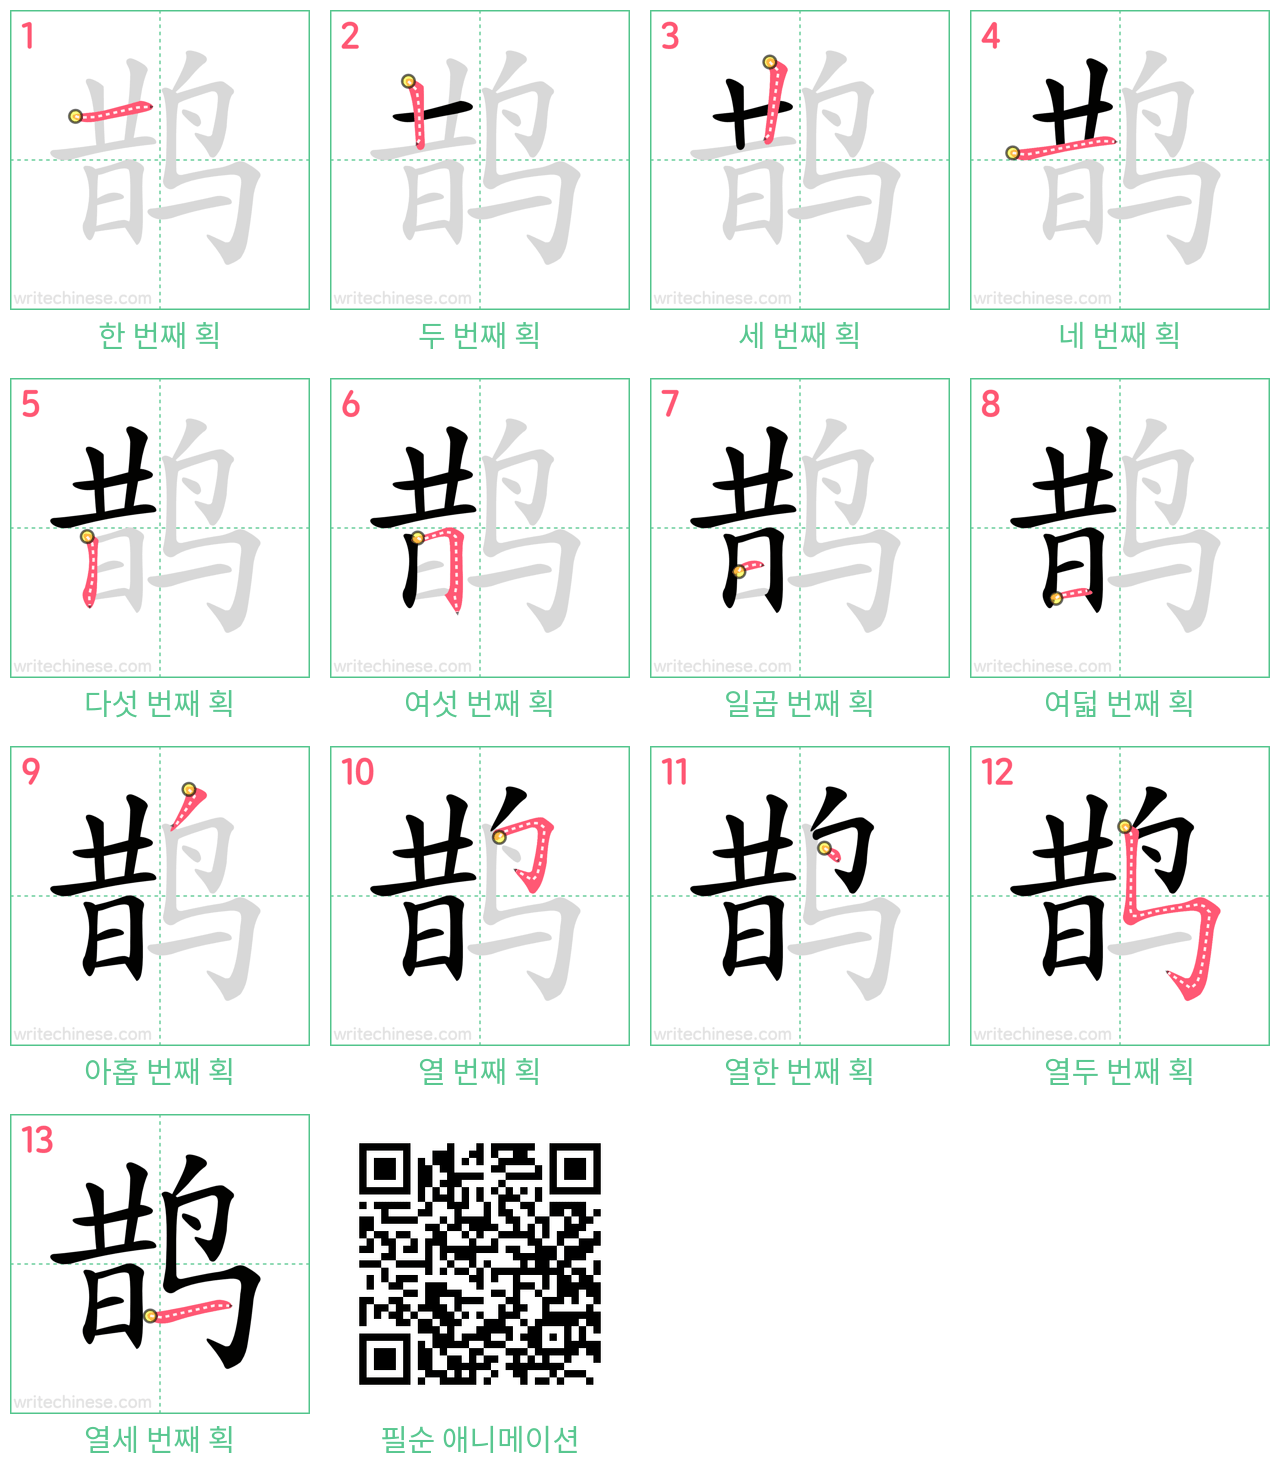 鹊 step-by-step stroke order diagrams